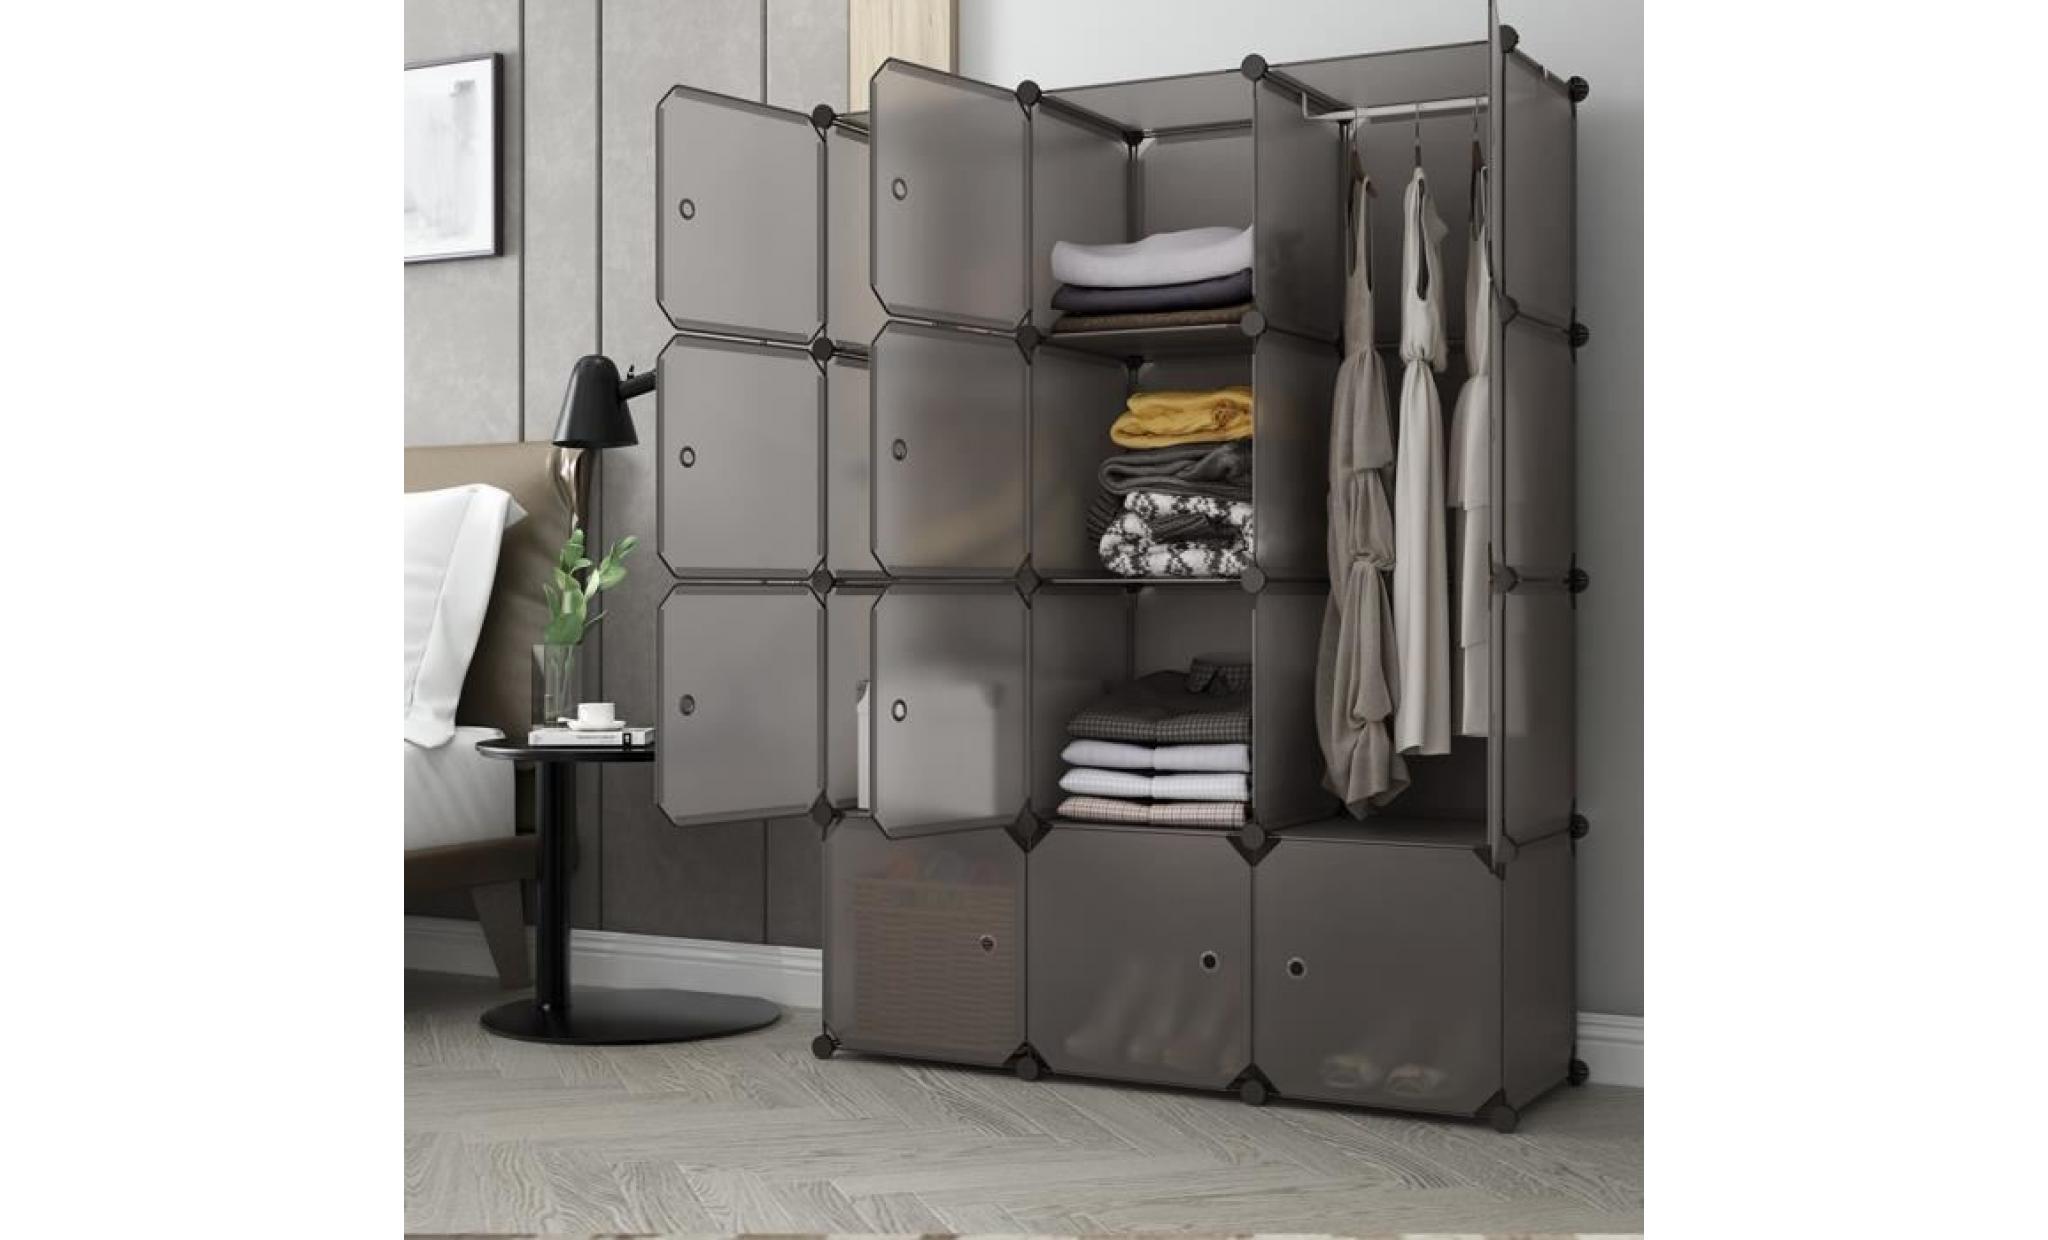 armoire langria 12 cube multifonctionnel armoire modulaire empilable en plastique cube gris